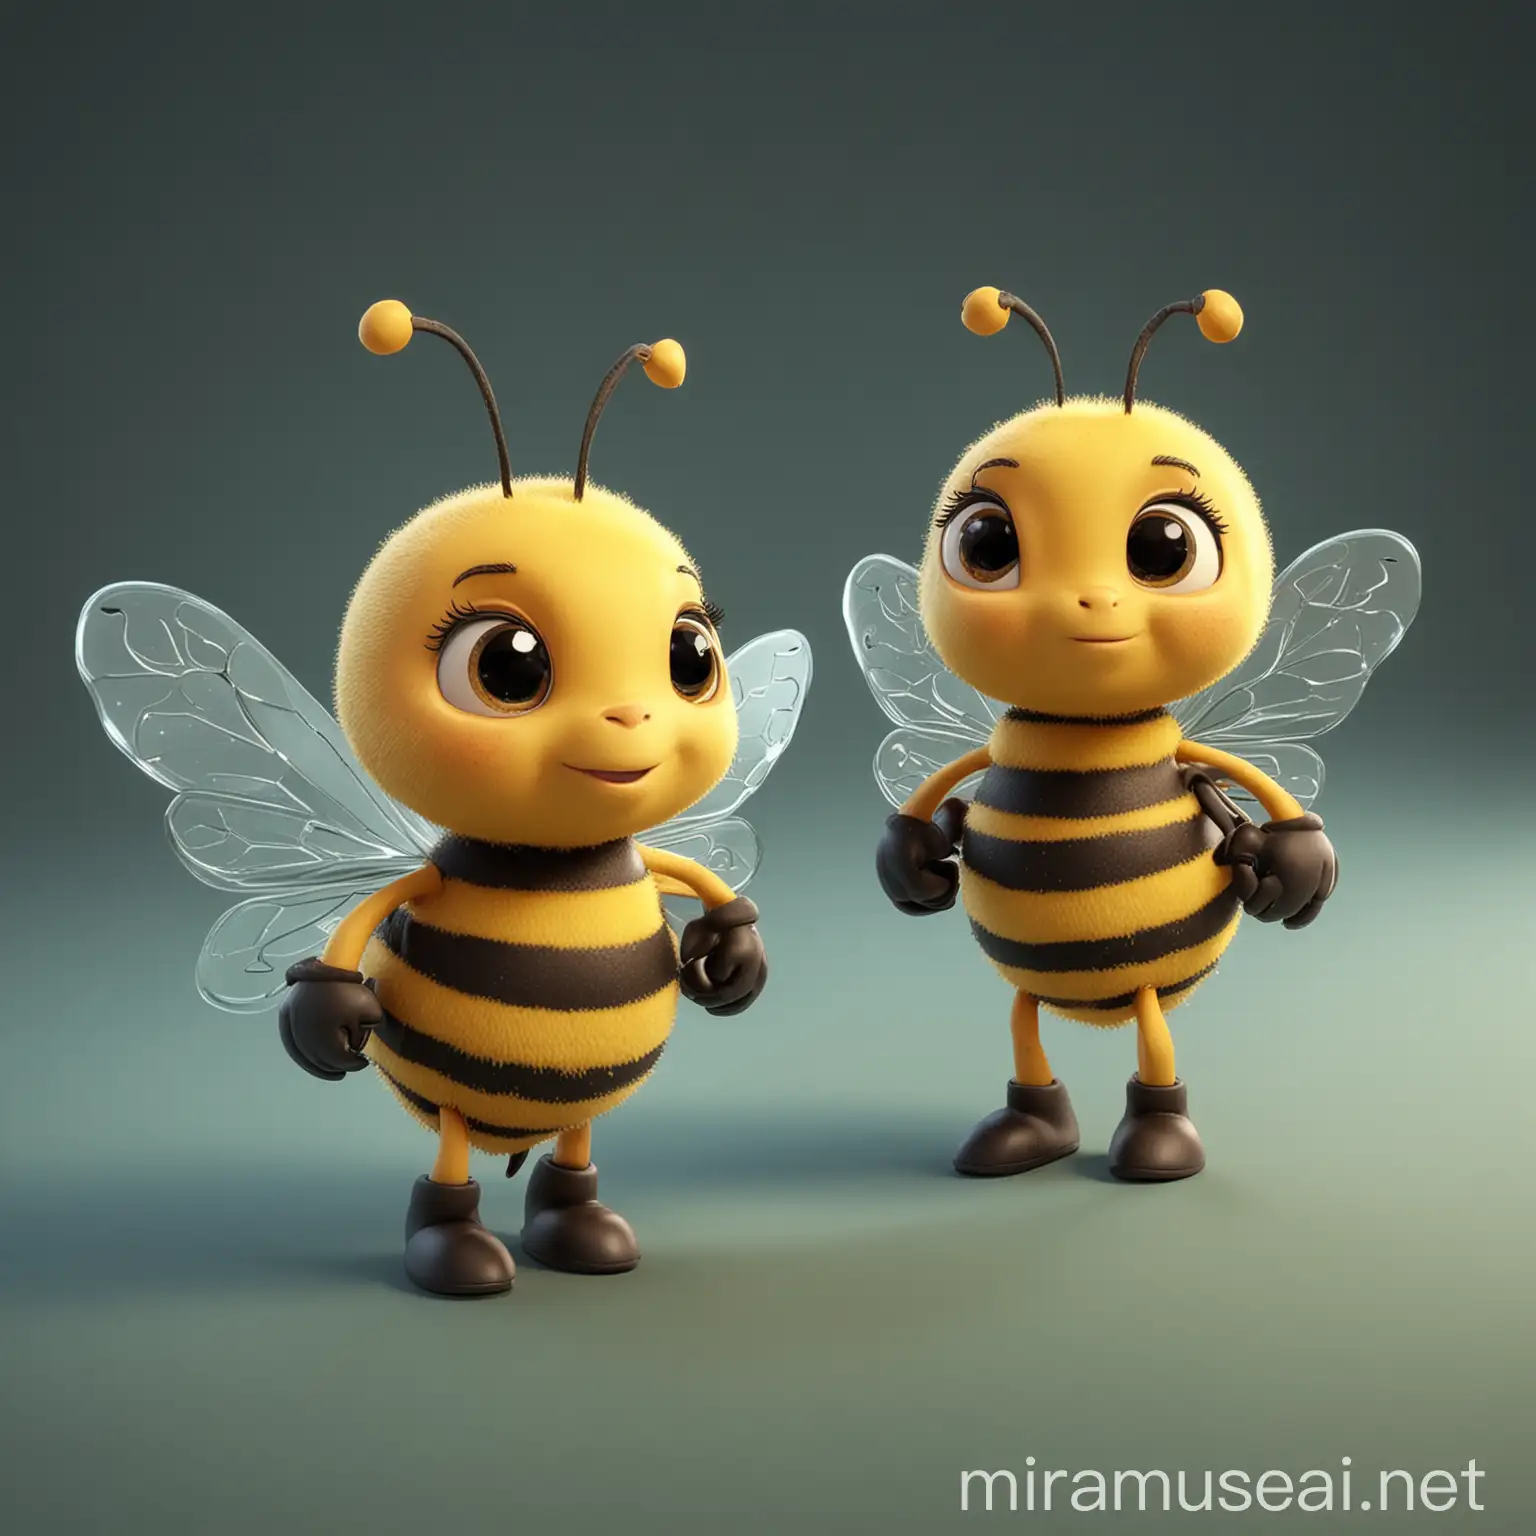 Cute, cartoon, 3D, three-dimensional, little bee